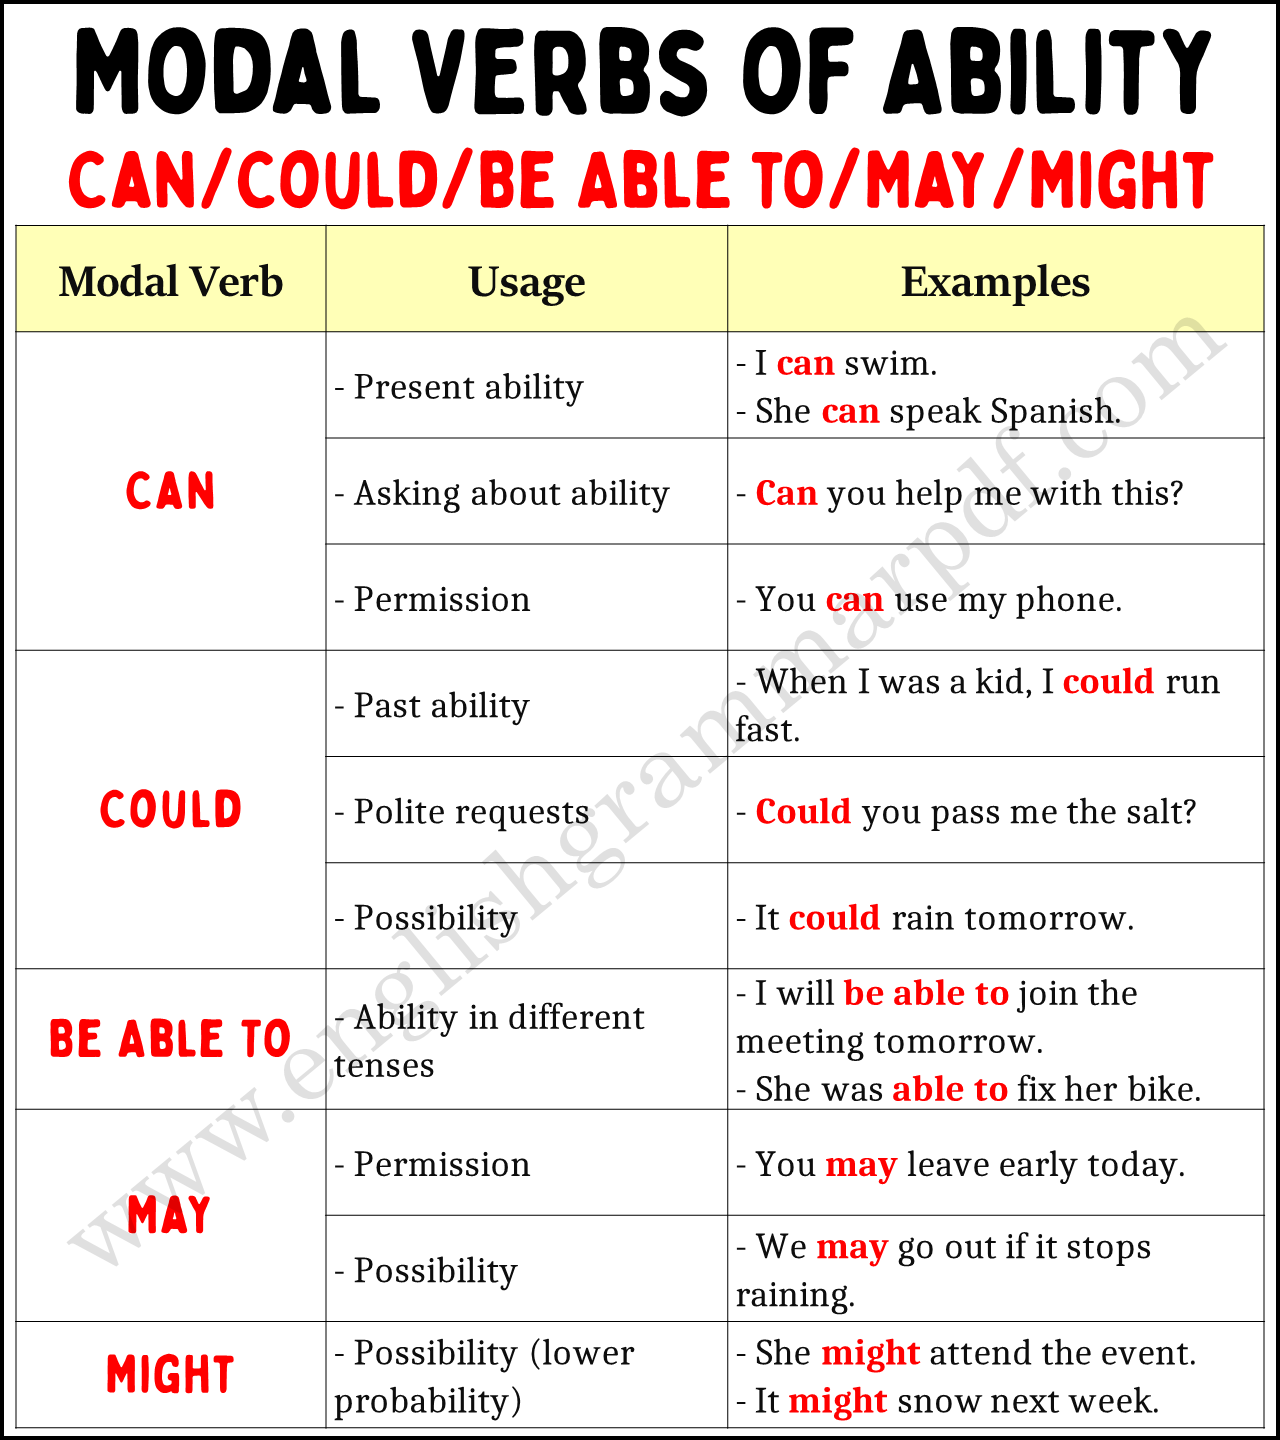 Modal Verbs of Ability